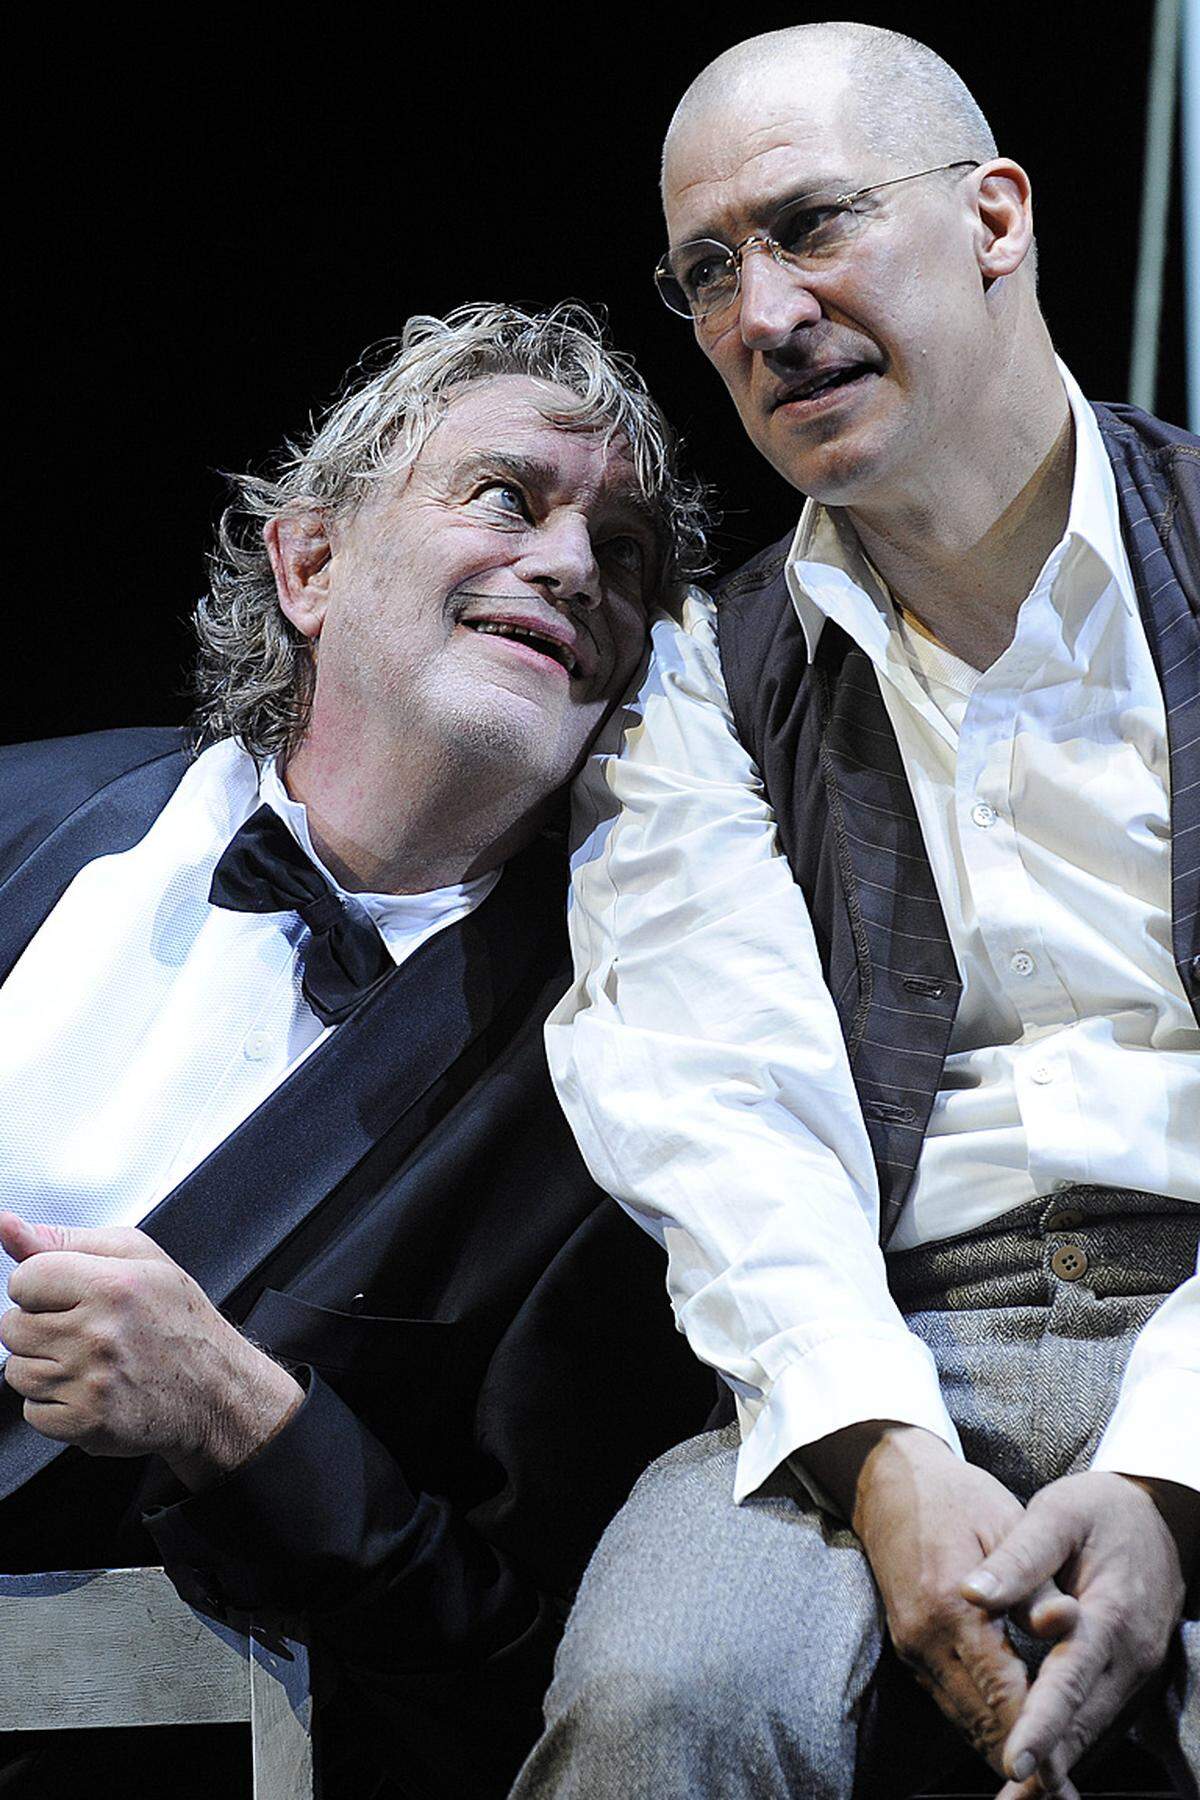 2009 trat der inzwischen entlassene Burgtheater-Direktor Matthias Hartmann seine Intendanz mit Goethes "Faust" an. Er inszenierte beide Teile, in Teil eins spielte Voss Mephisto an der Seite von Faust Tobias Moretti.